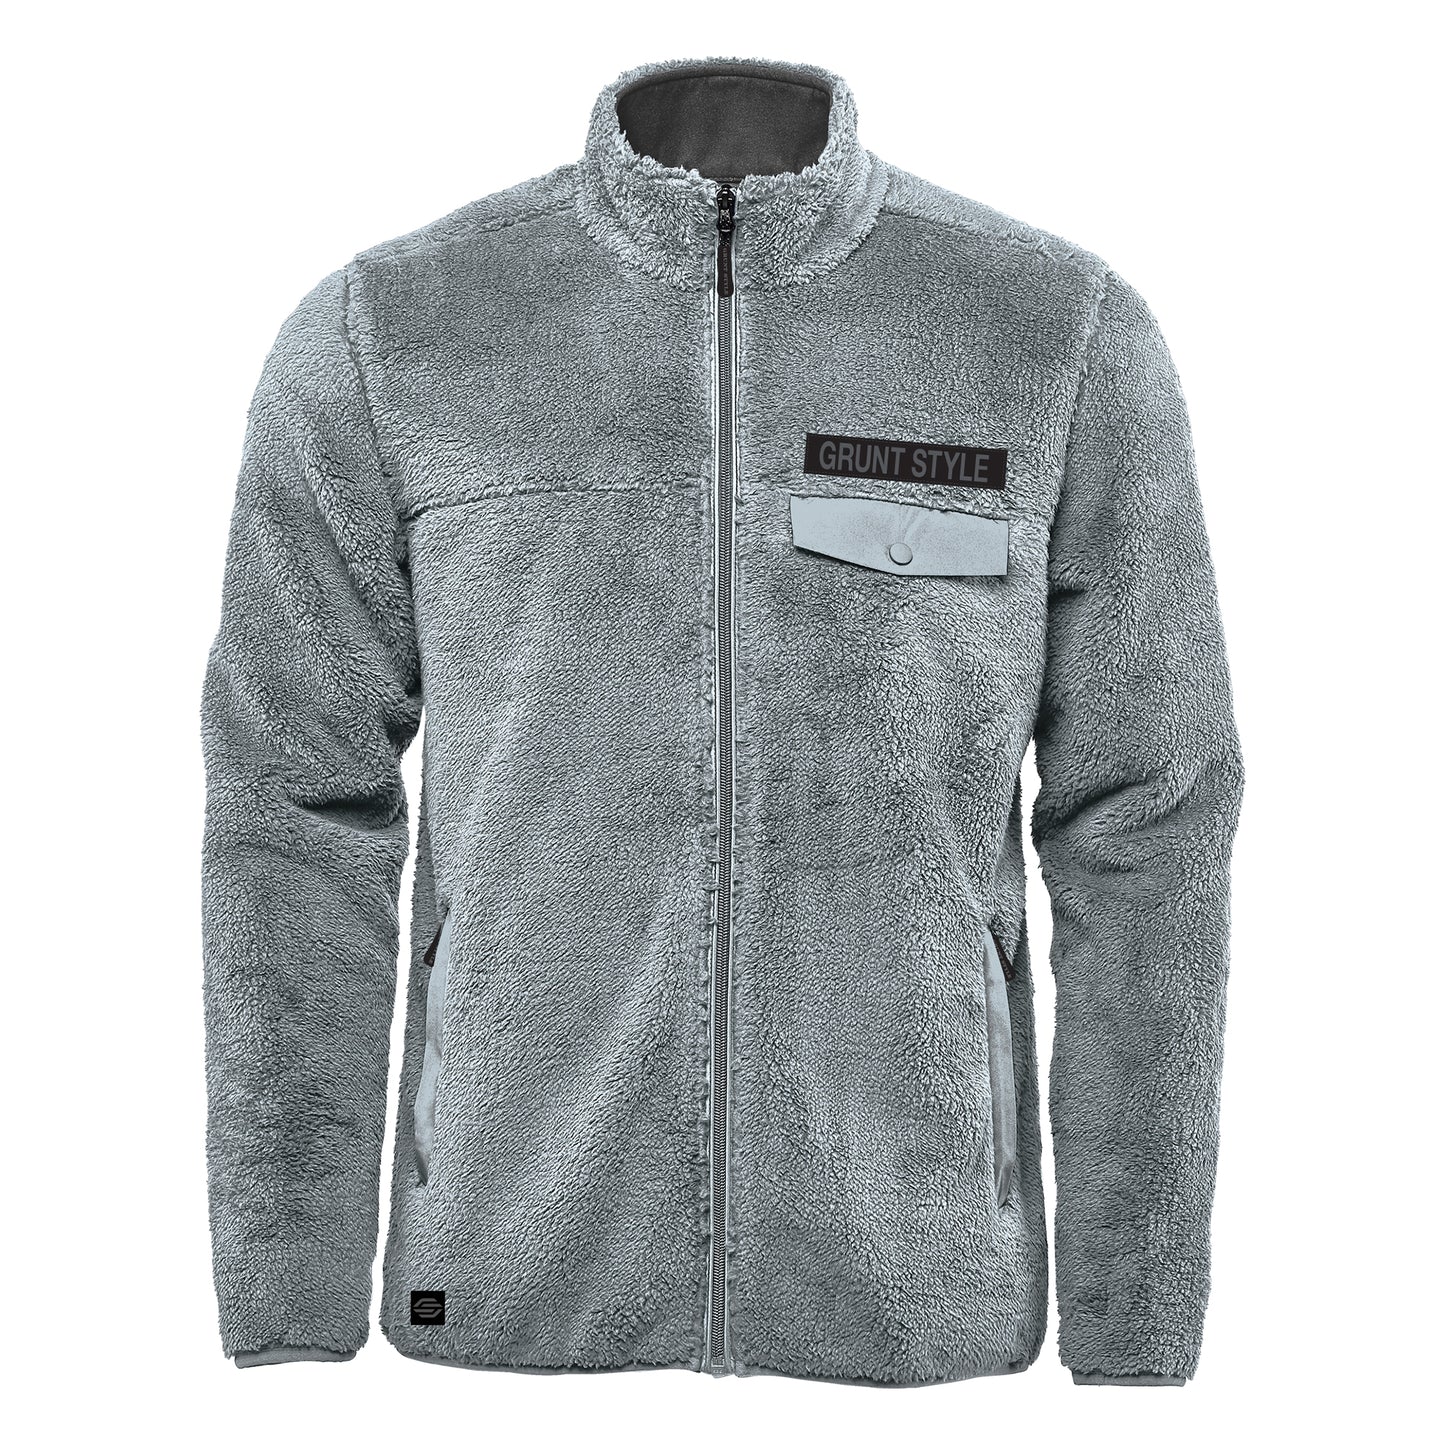 Full Zip Sherpa Jacket in Gray | Grunt Style 